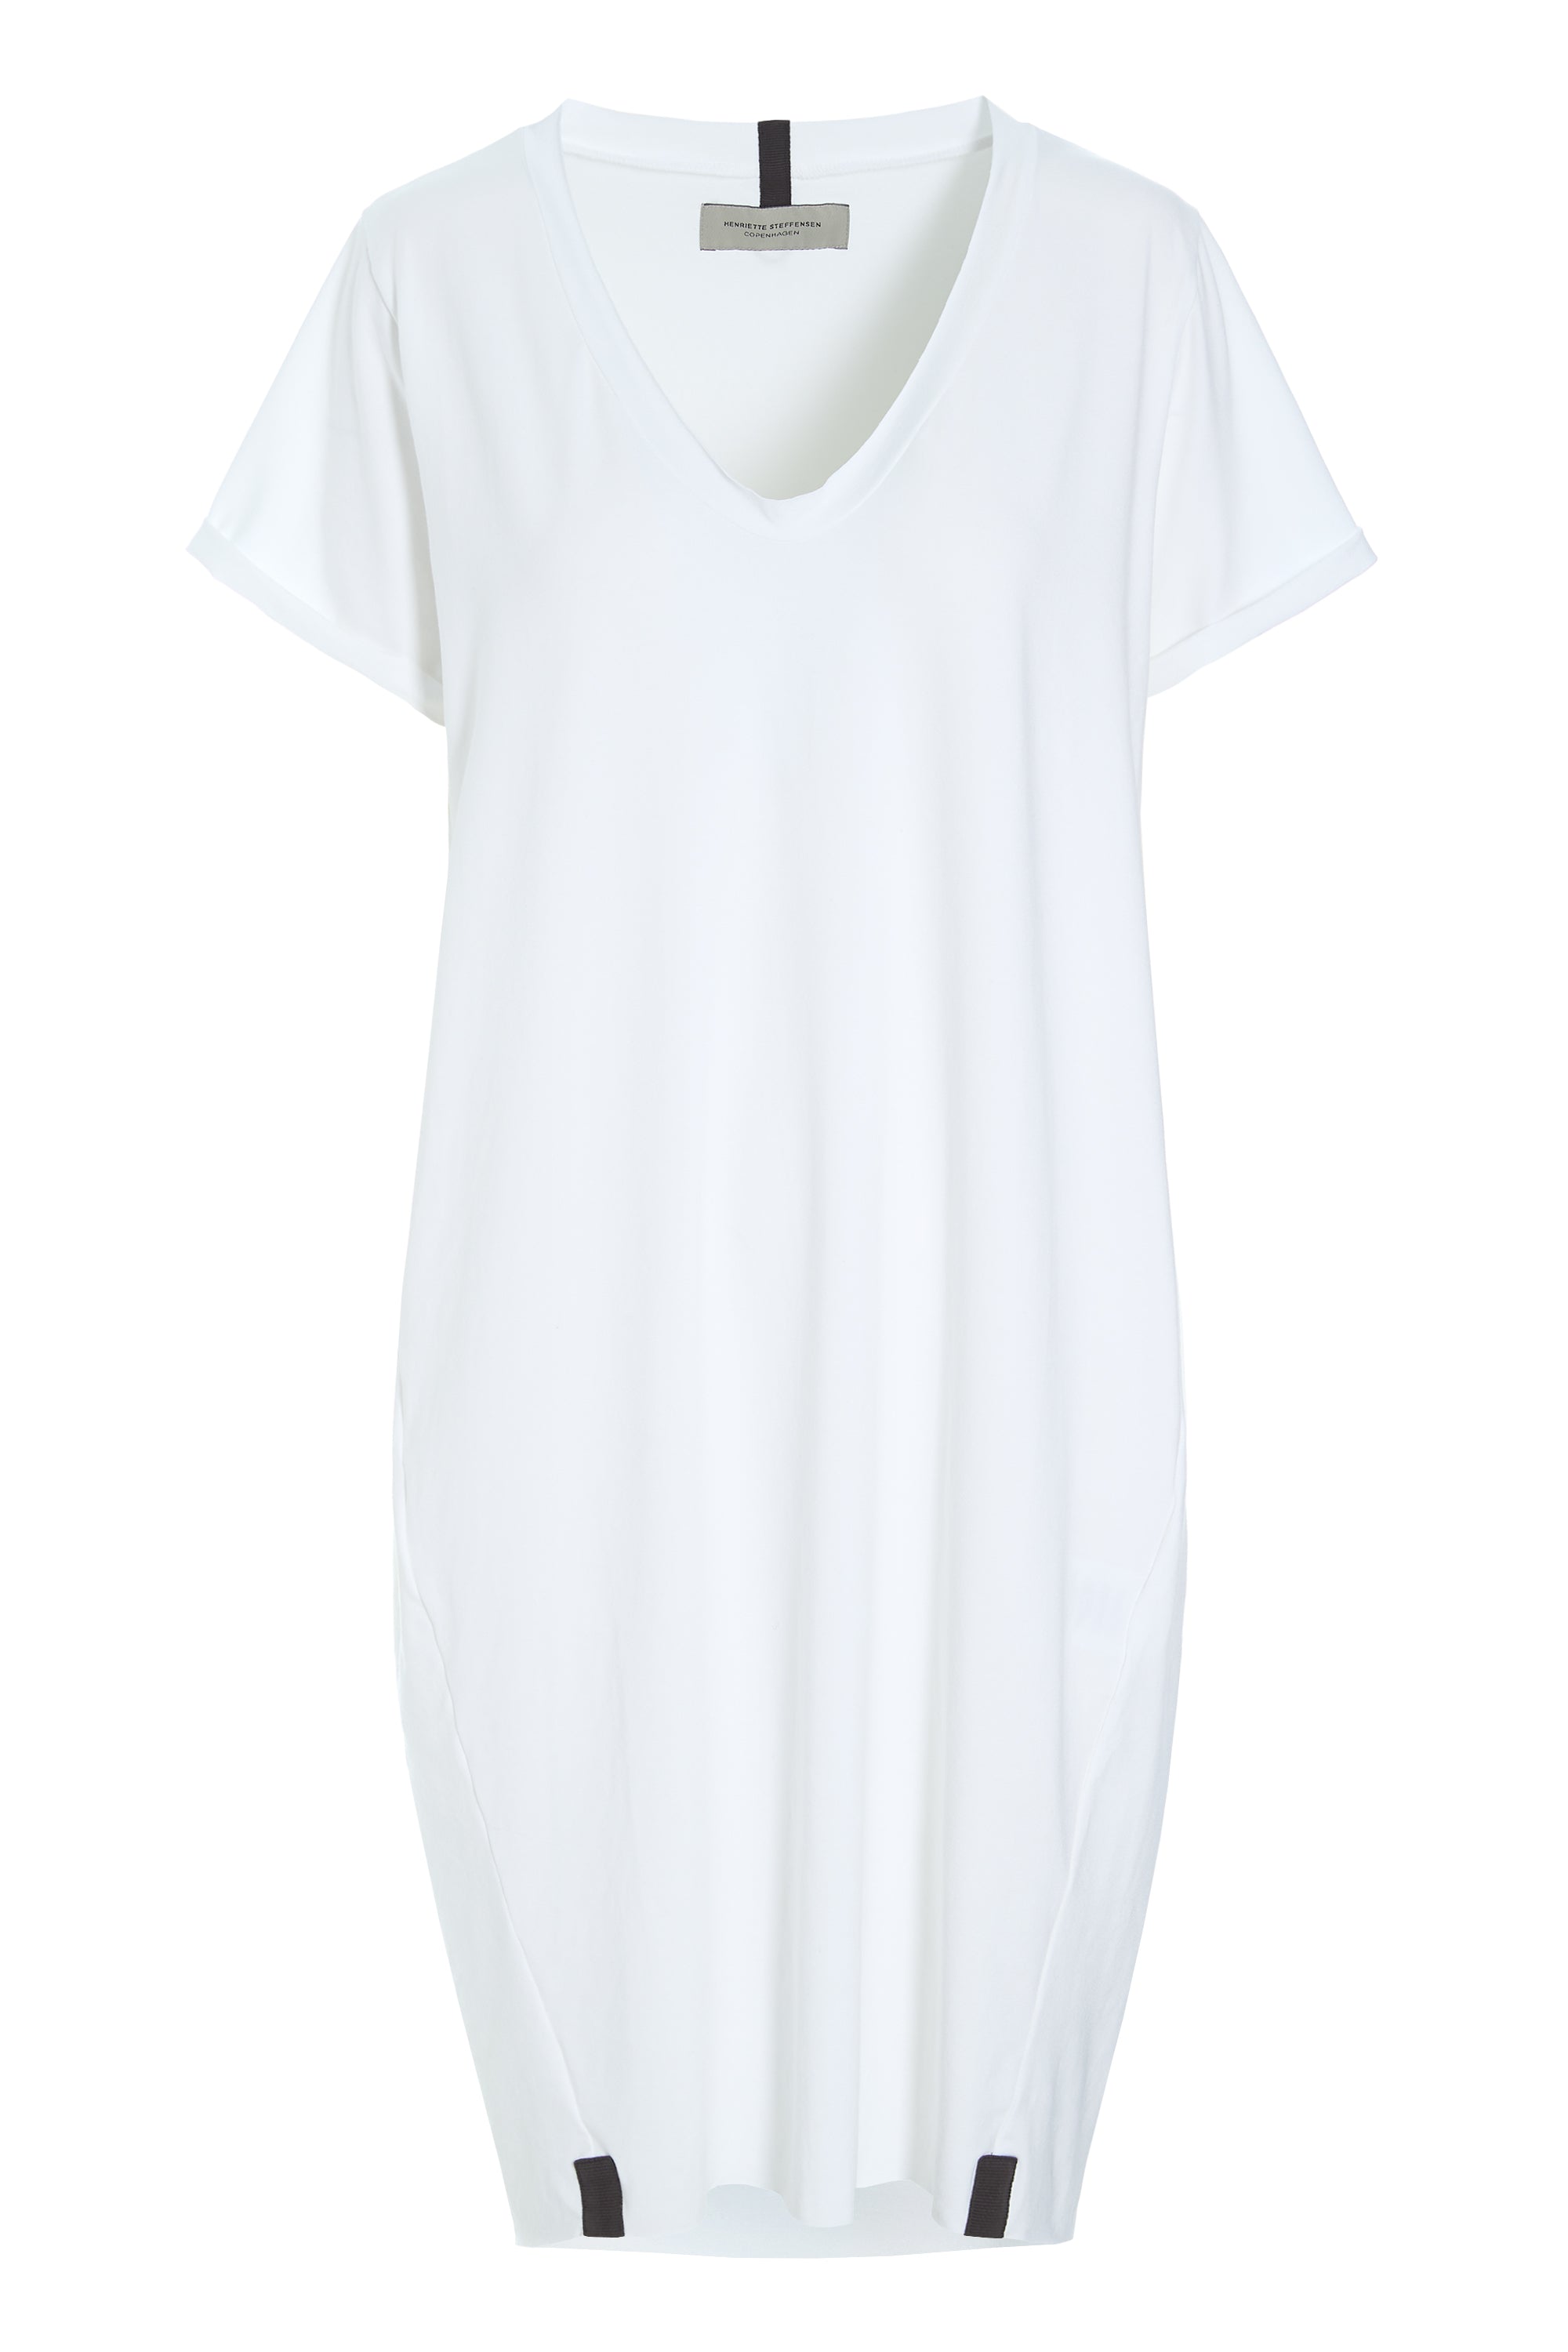 HENRIETTE STEFFENSEN COPENHAGEN KJOLE V-HALS - 98049 DRESSES jersey WHITE 816